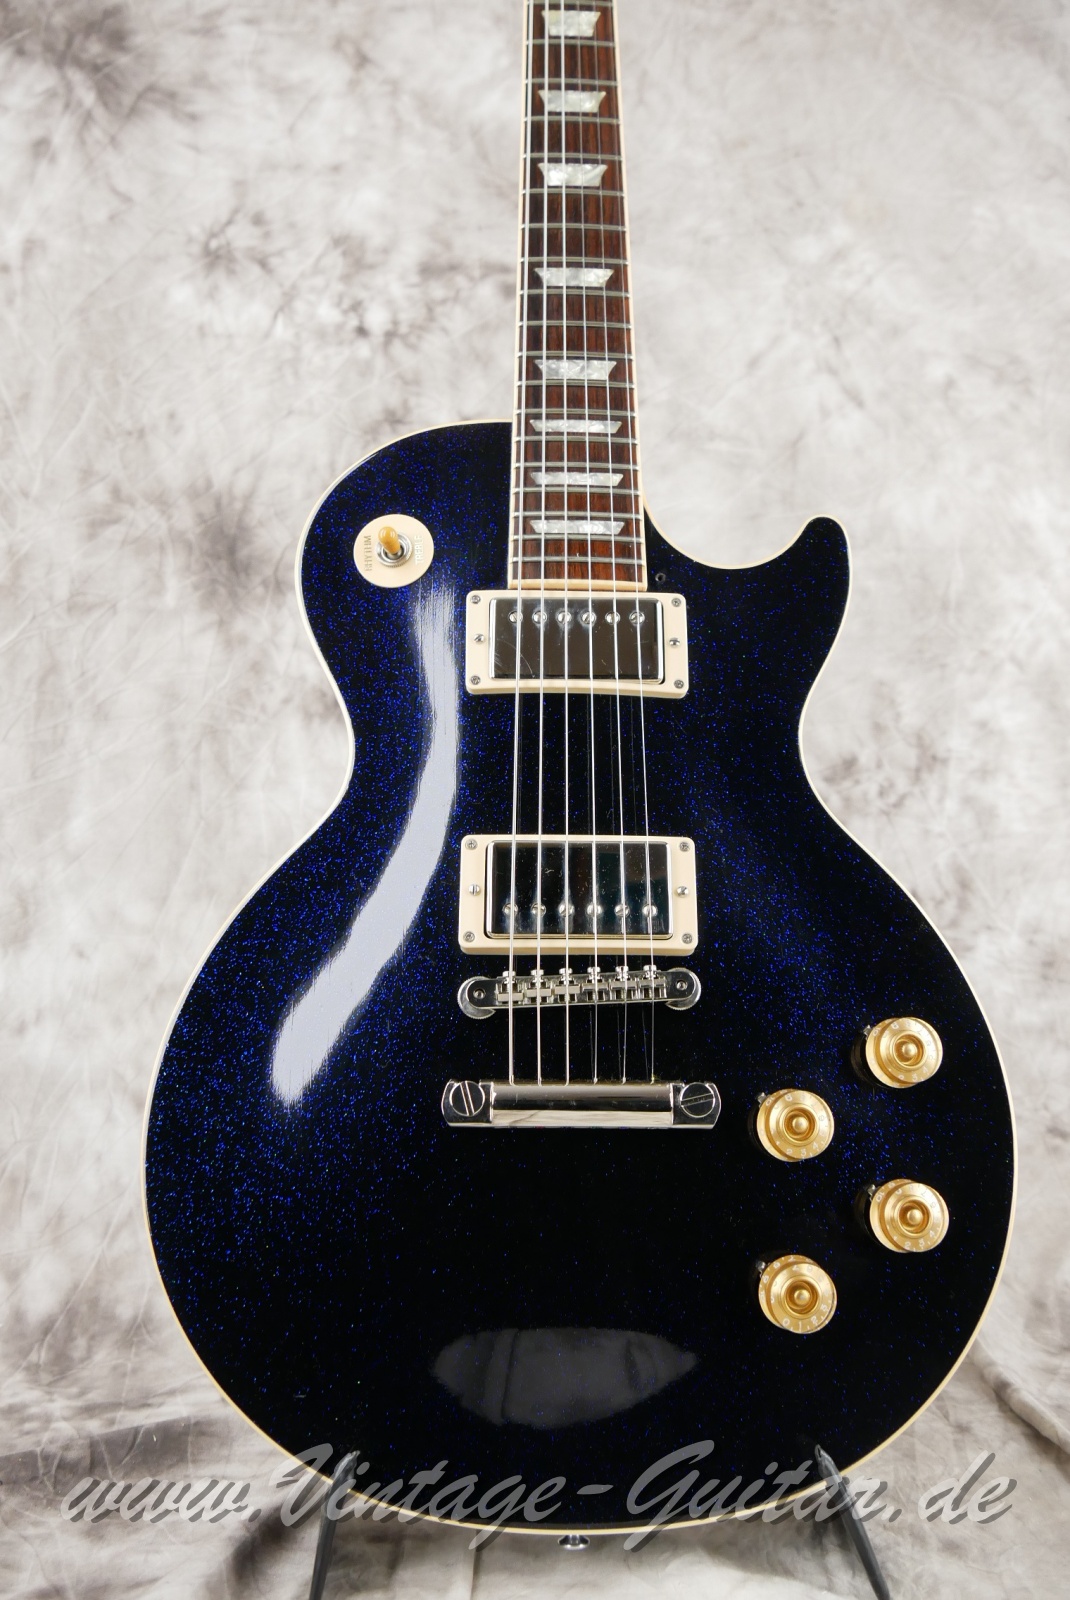 Gibson_Les Paul_Standard_Custom_Shop_edition_dark_blue_sparkle_1993-007.JPG